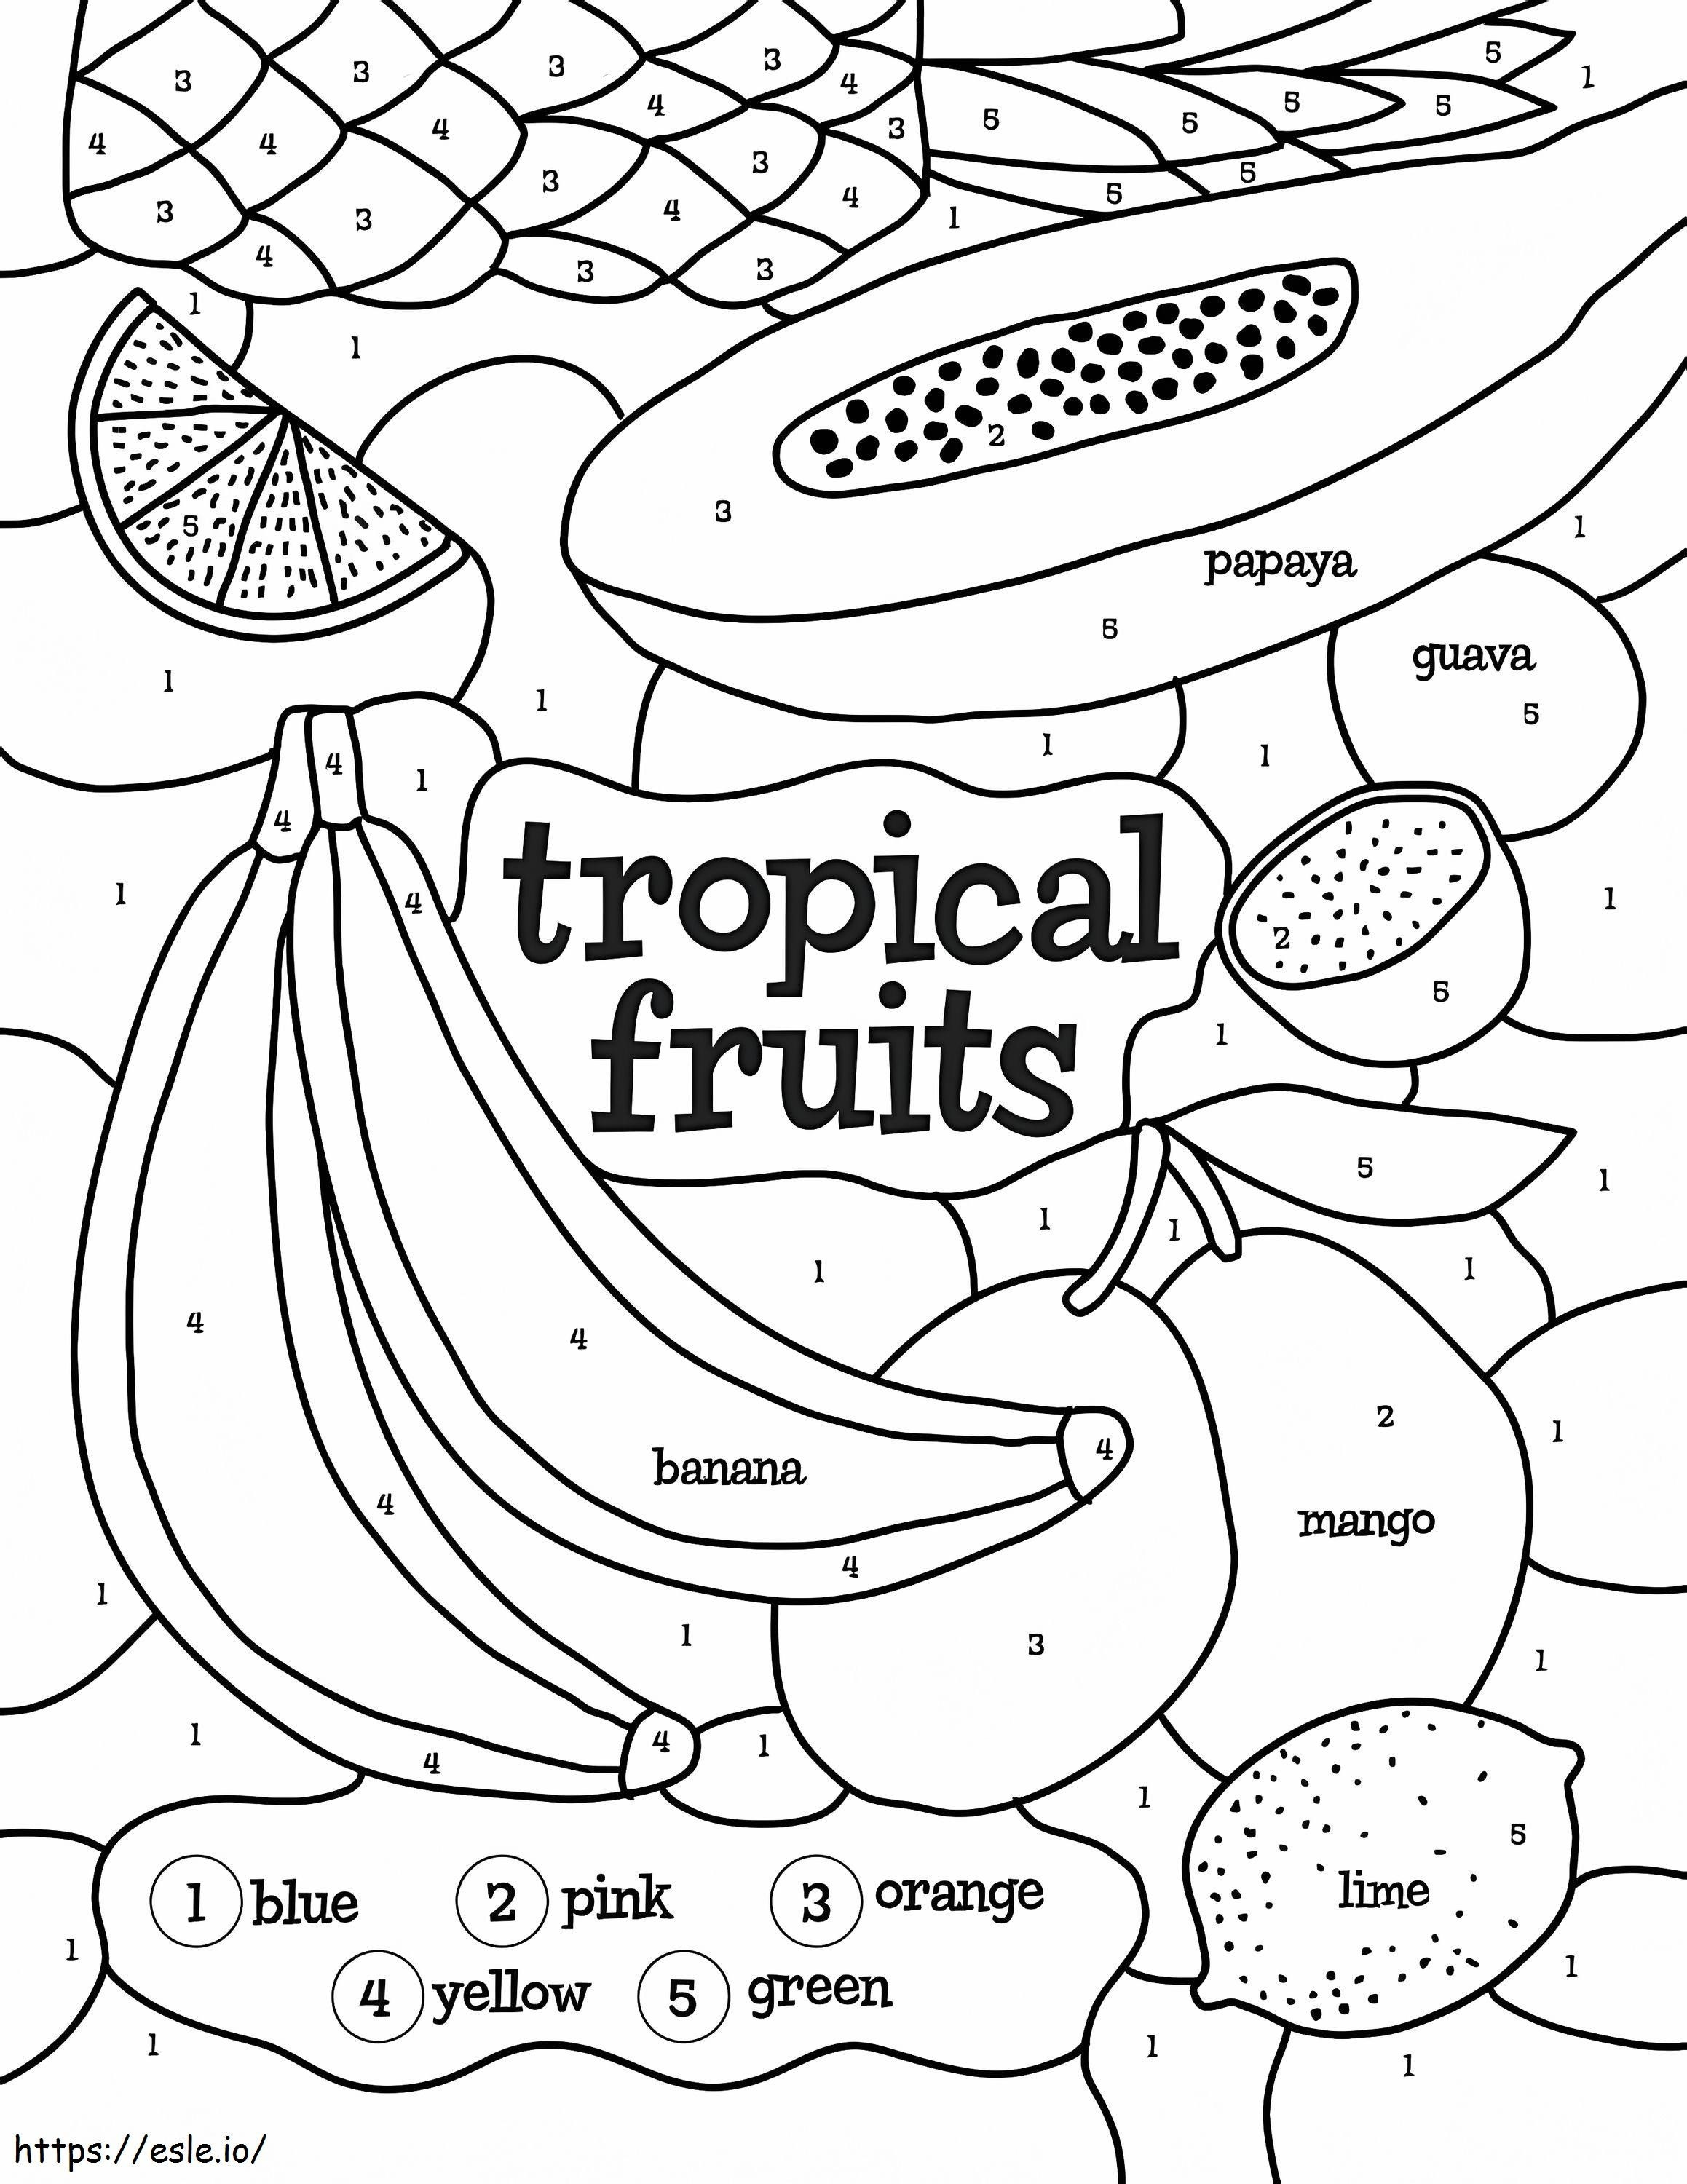 Cor de frutas tropicais por número para colorir